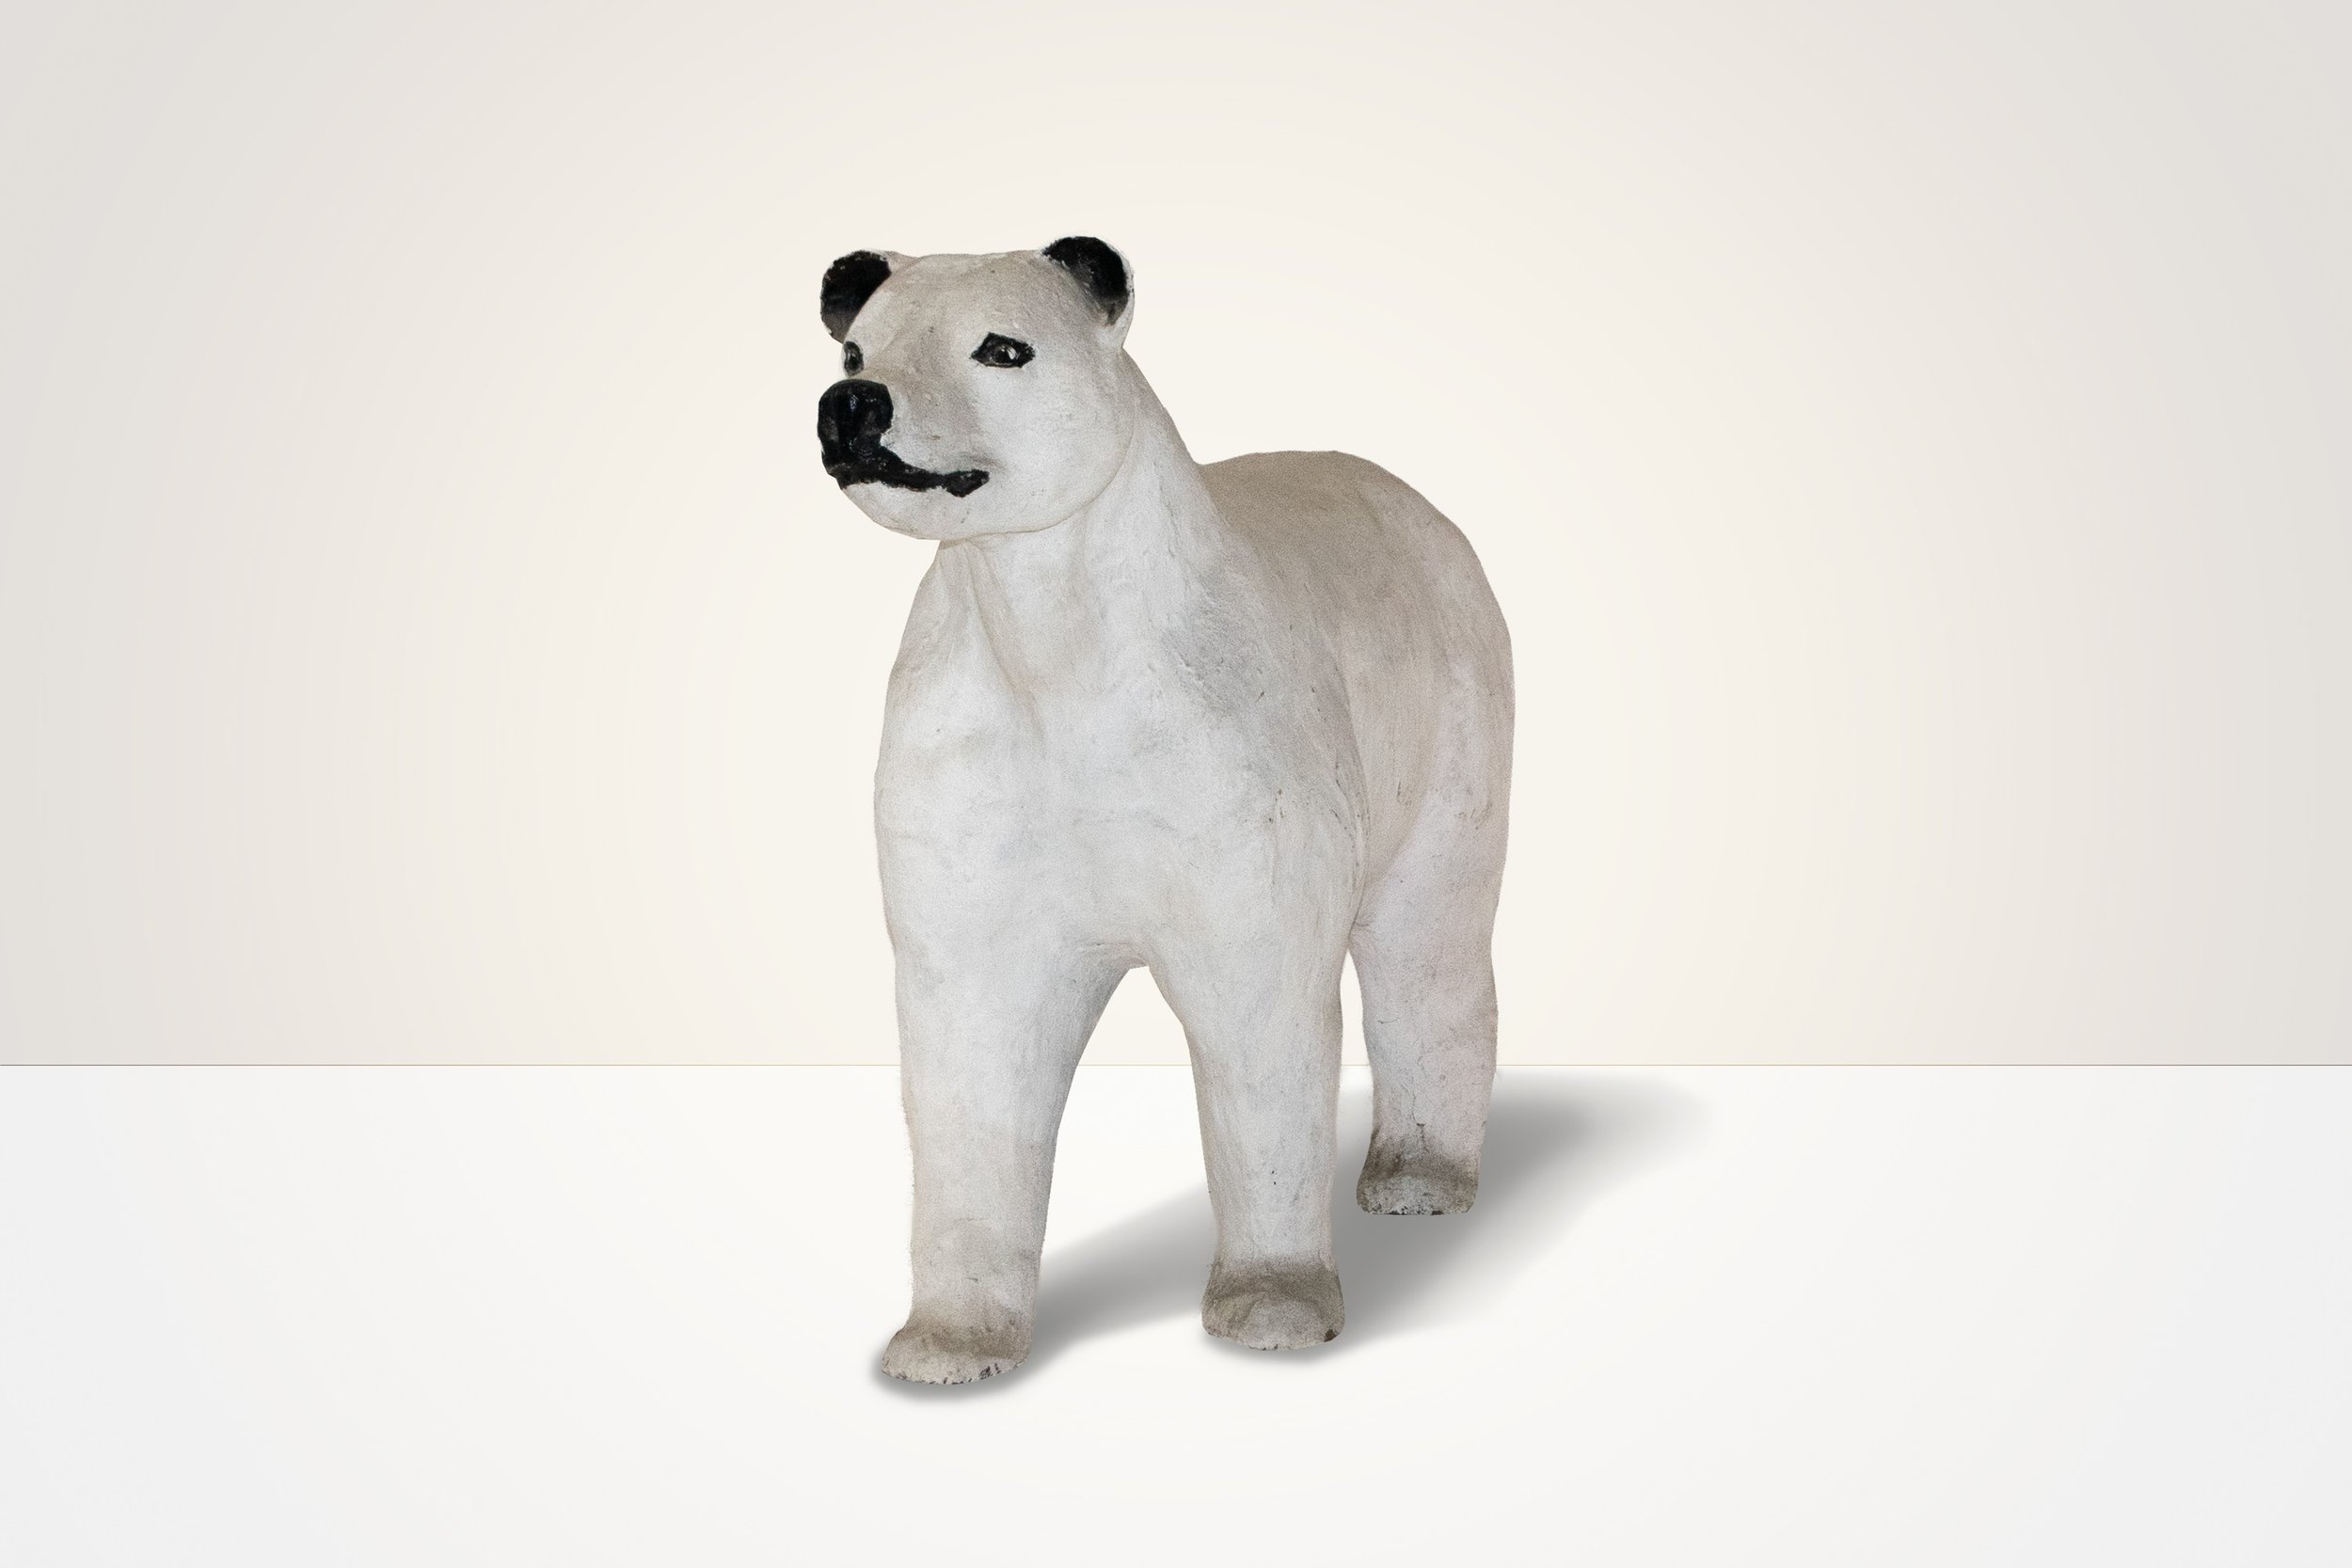 The 3D Polar Bear